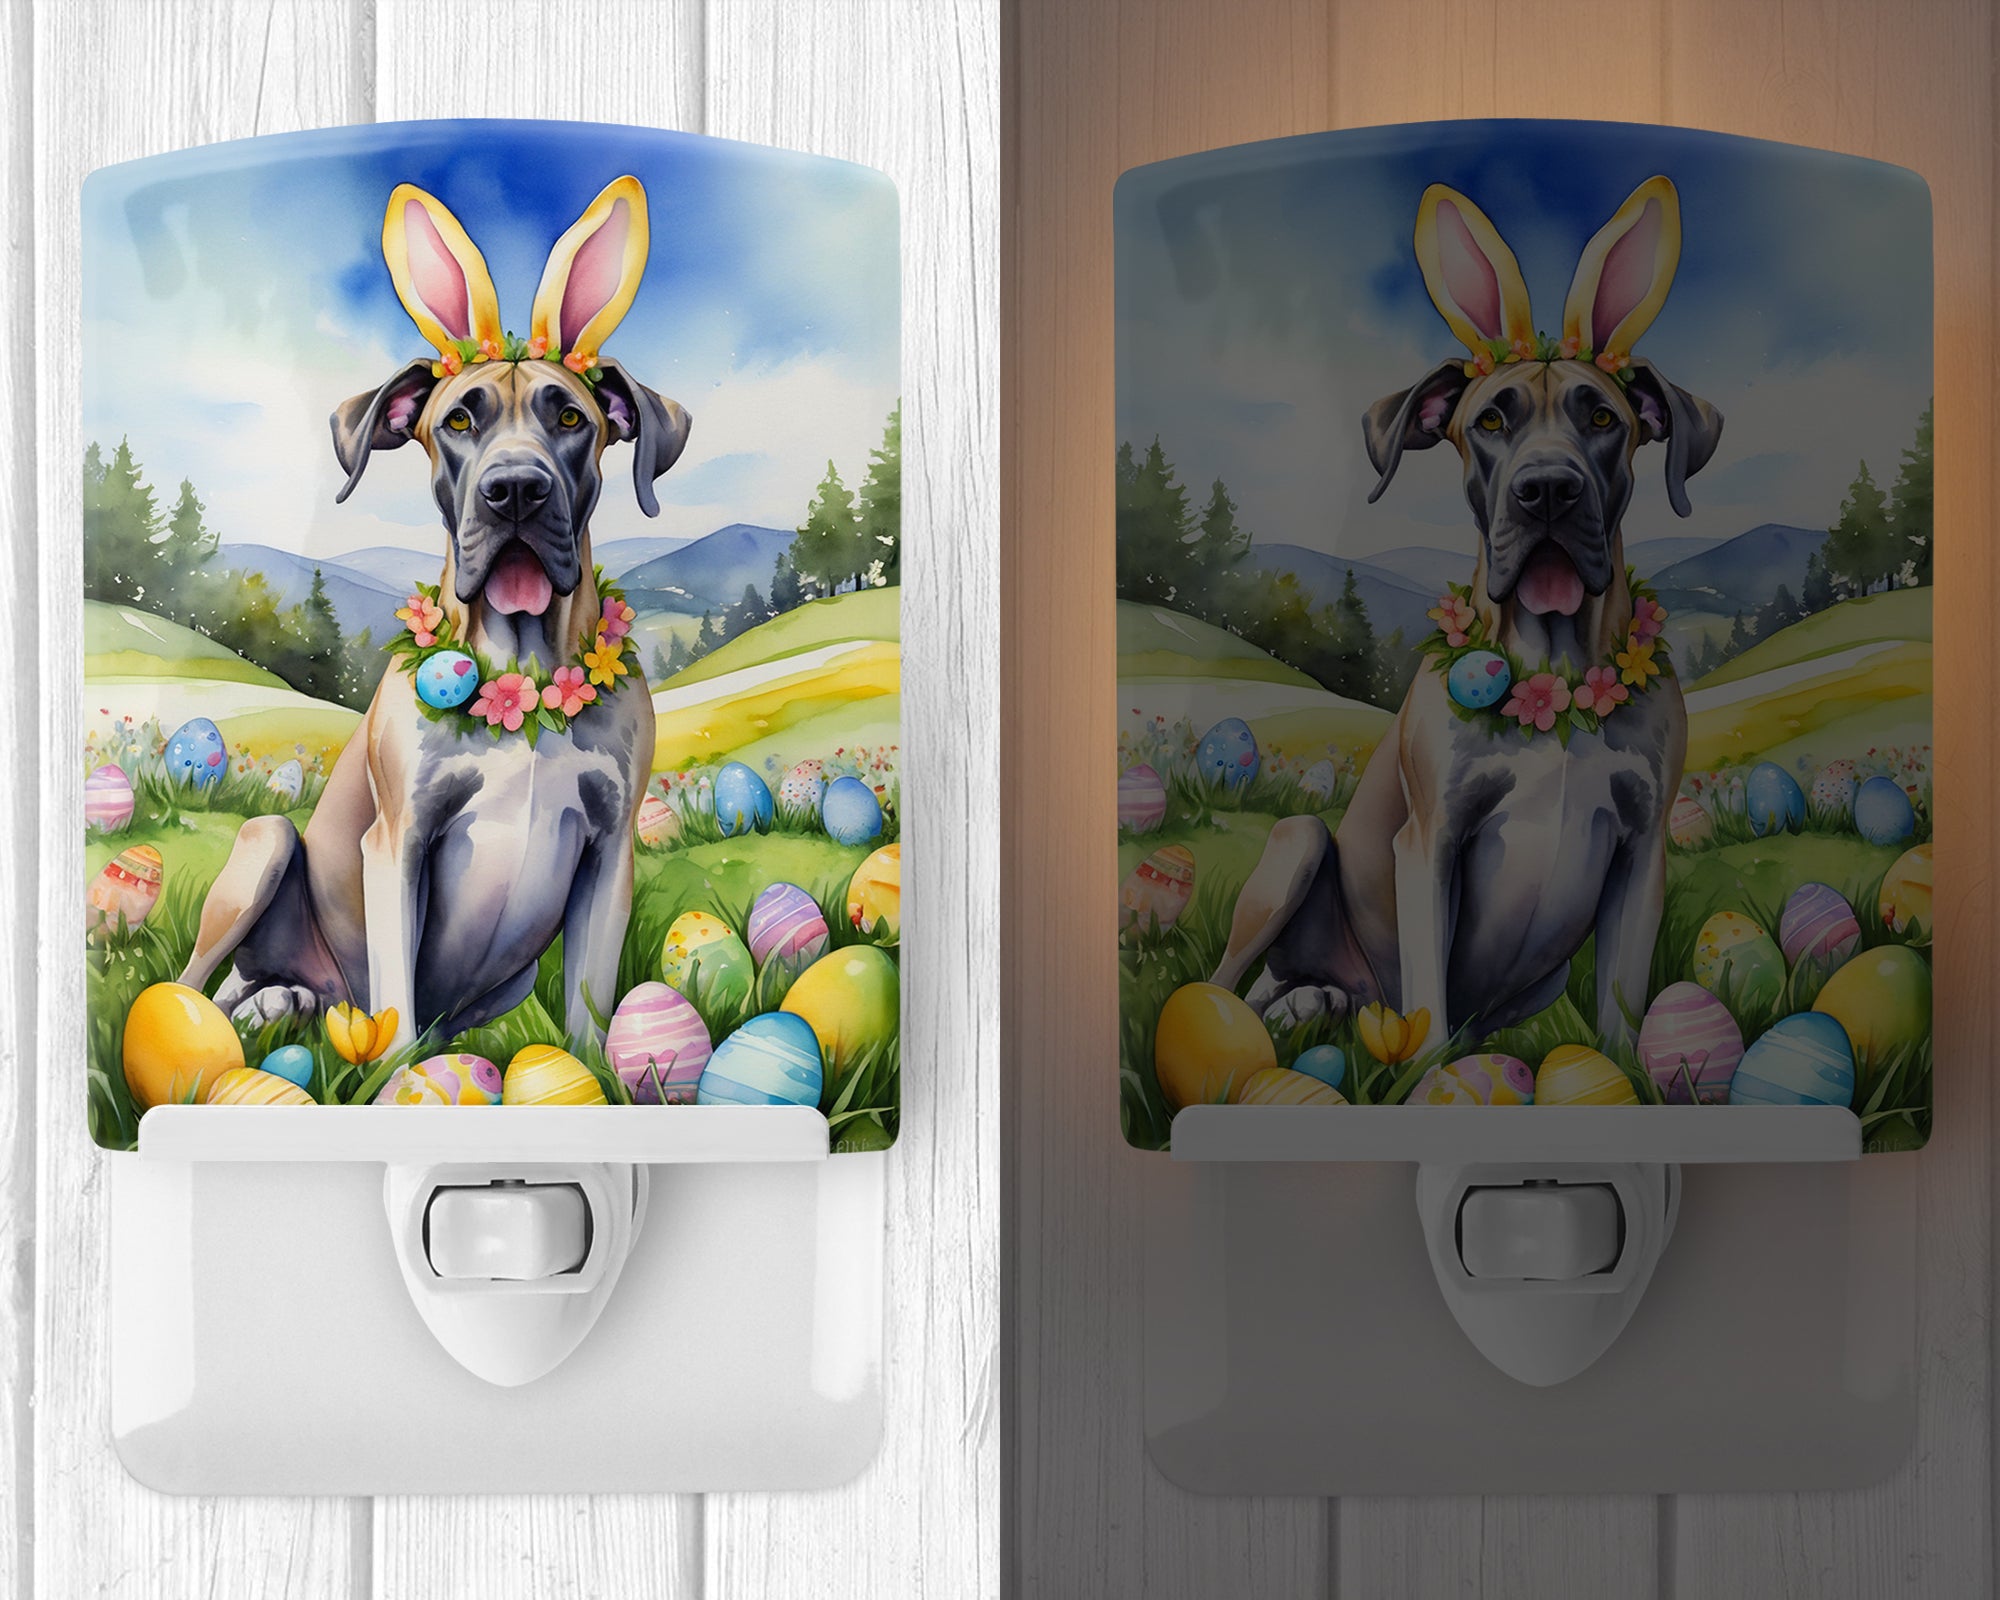 Buy this Great Dane Easter Egg Hunt Ceramic Night Light